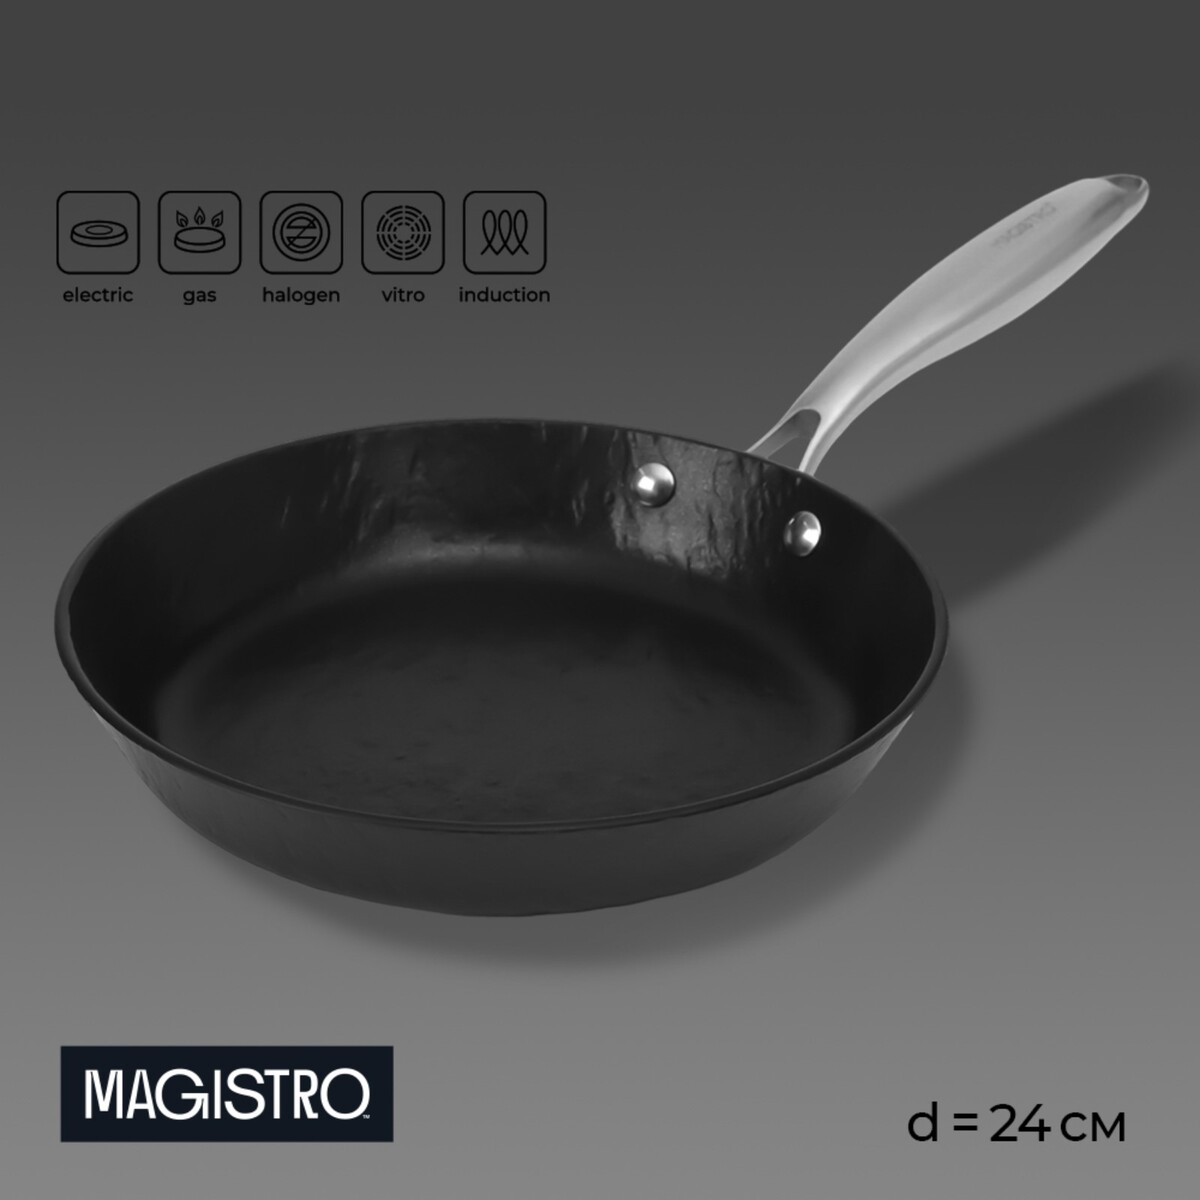 Сковорода magistro rock stone, d=24 см, h=4,5 см, антипригарное покрытие, индукция, цвет черный